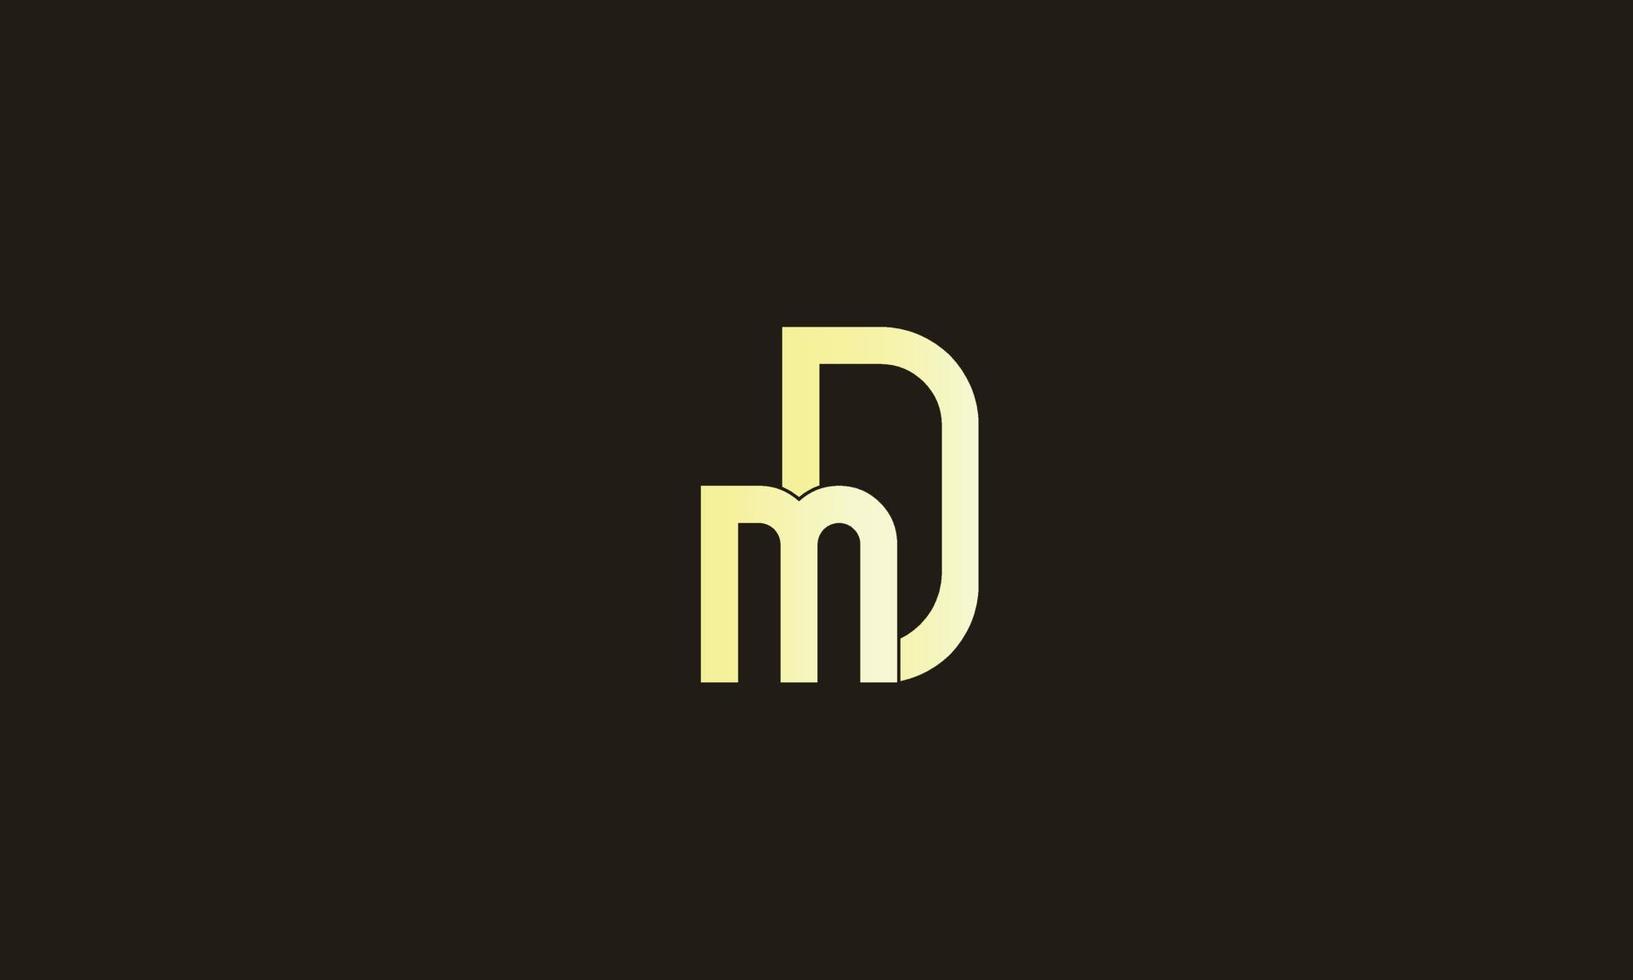 alfabetet bokstäver initialer monogram logotyp md, dm, m och d vektor